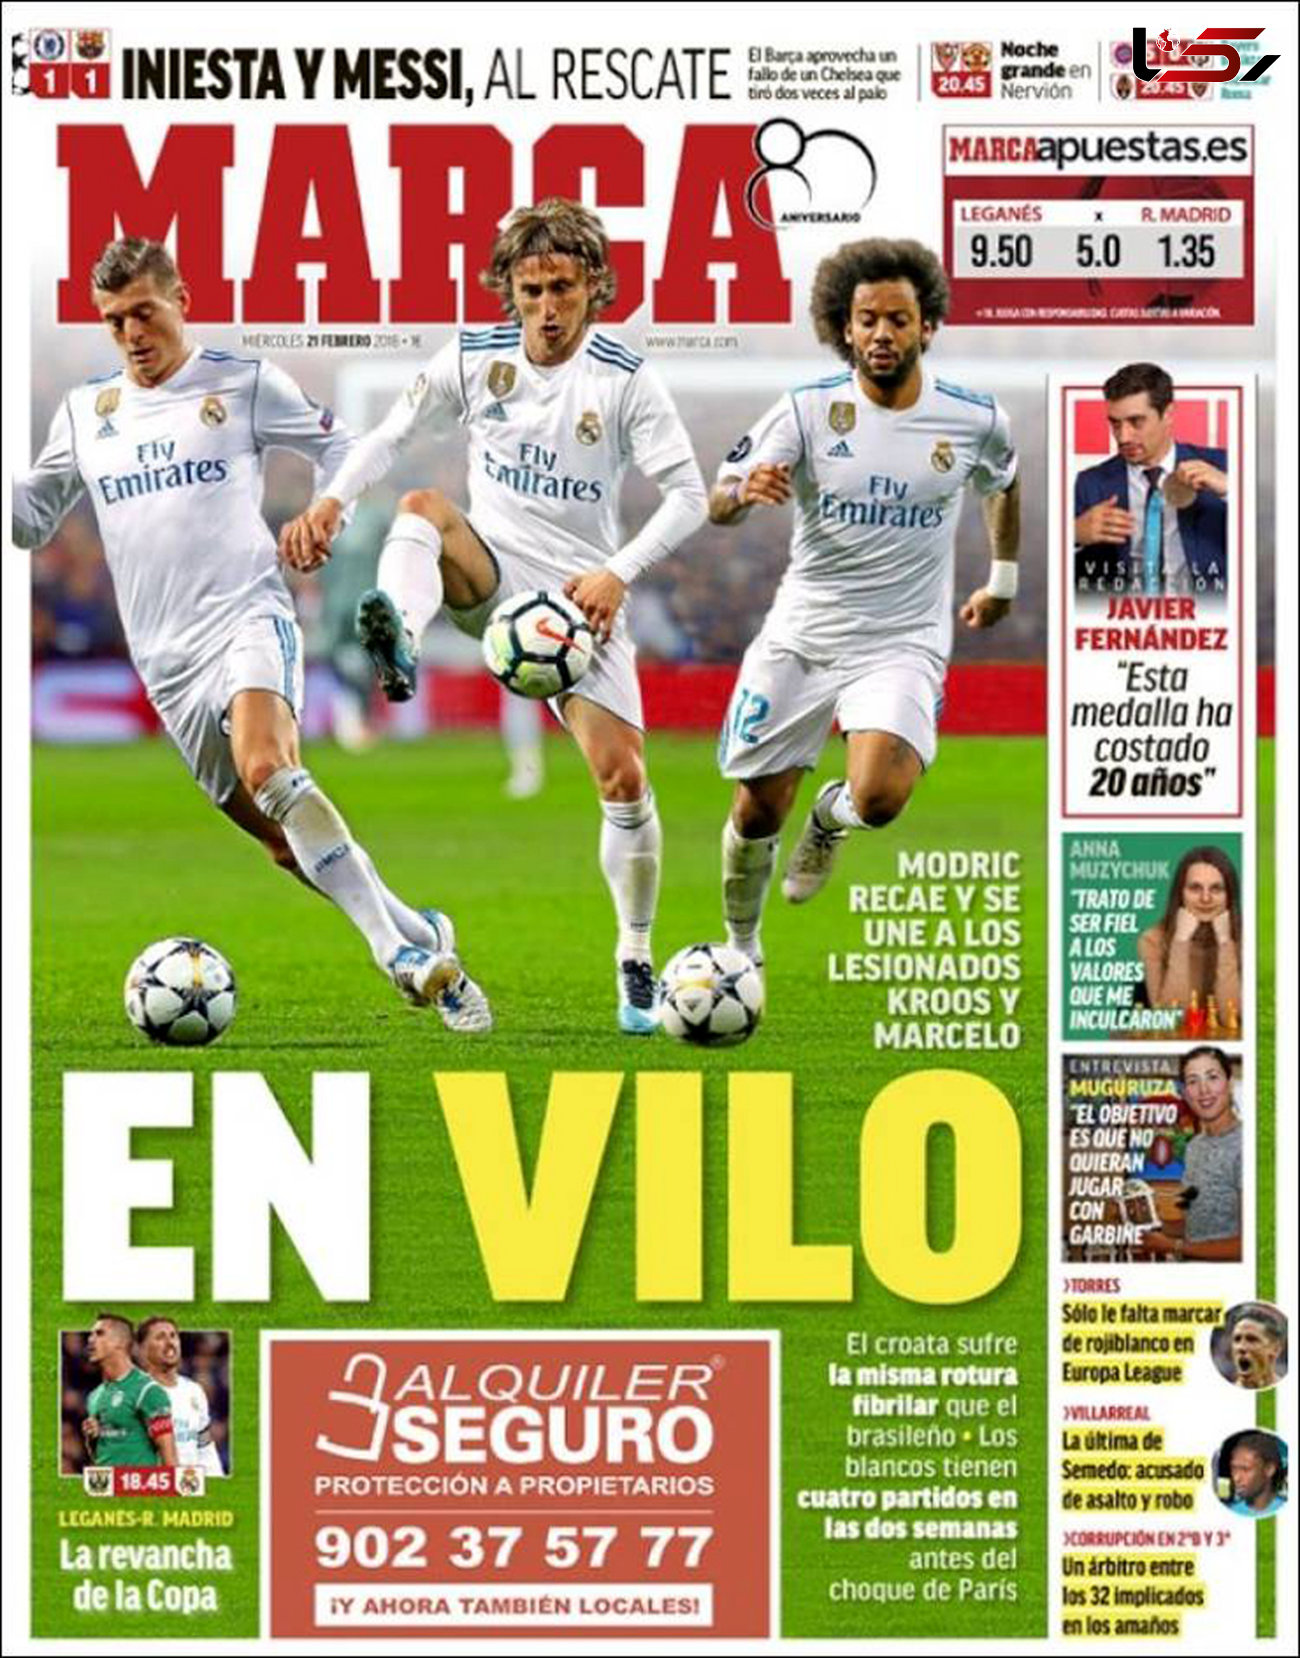 صفحه اول روزنامه های امروز اسپانیا